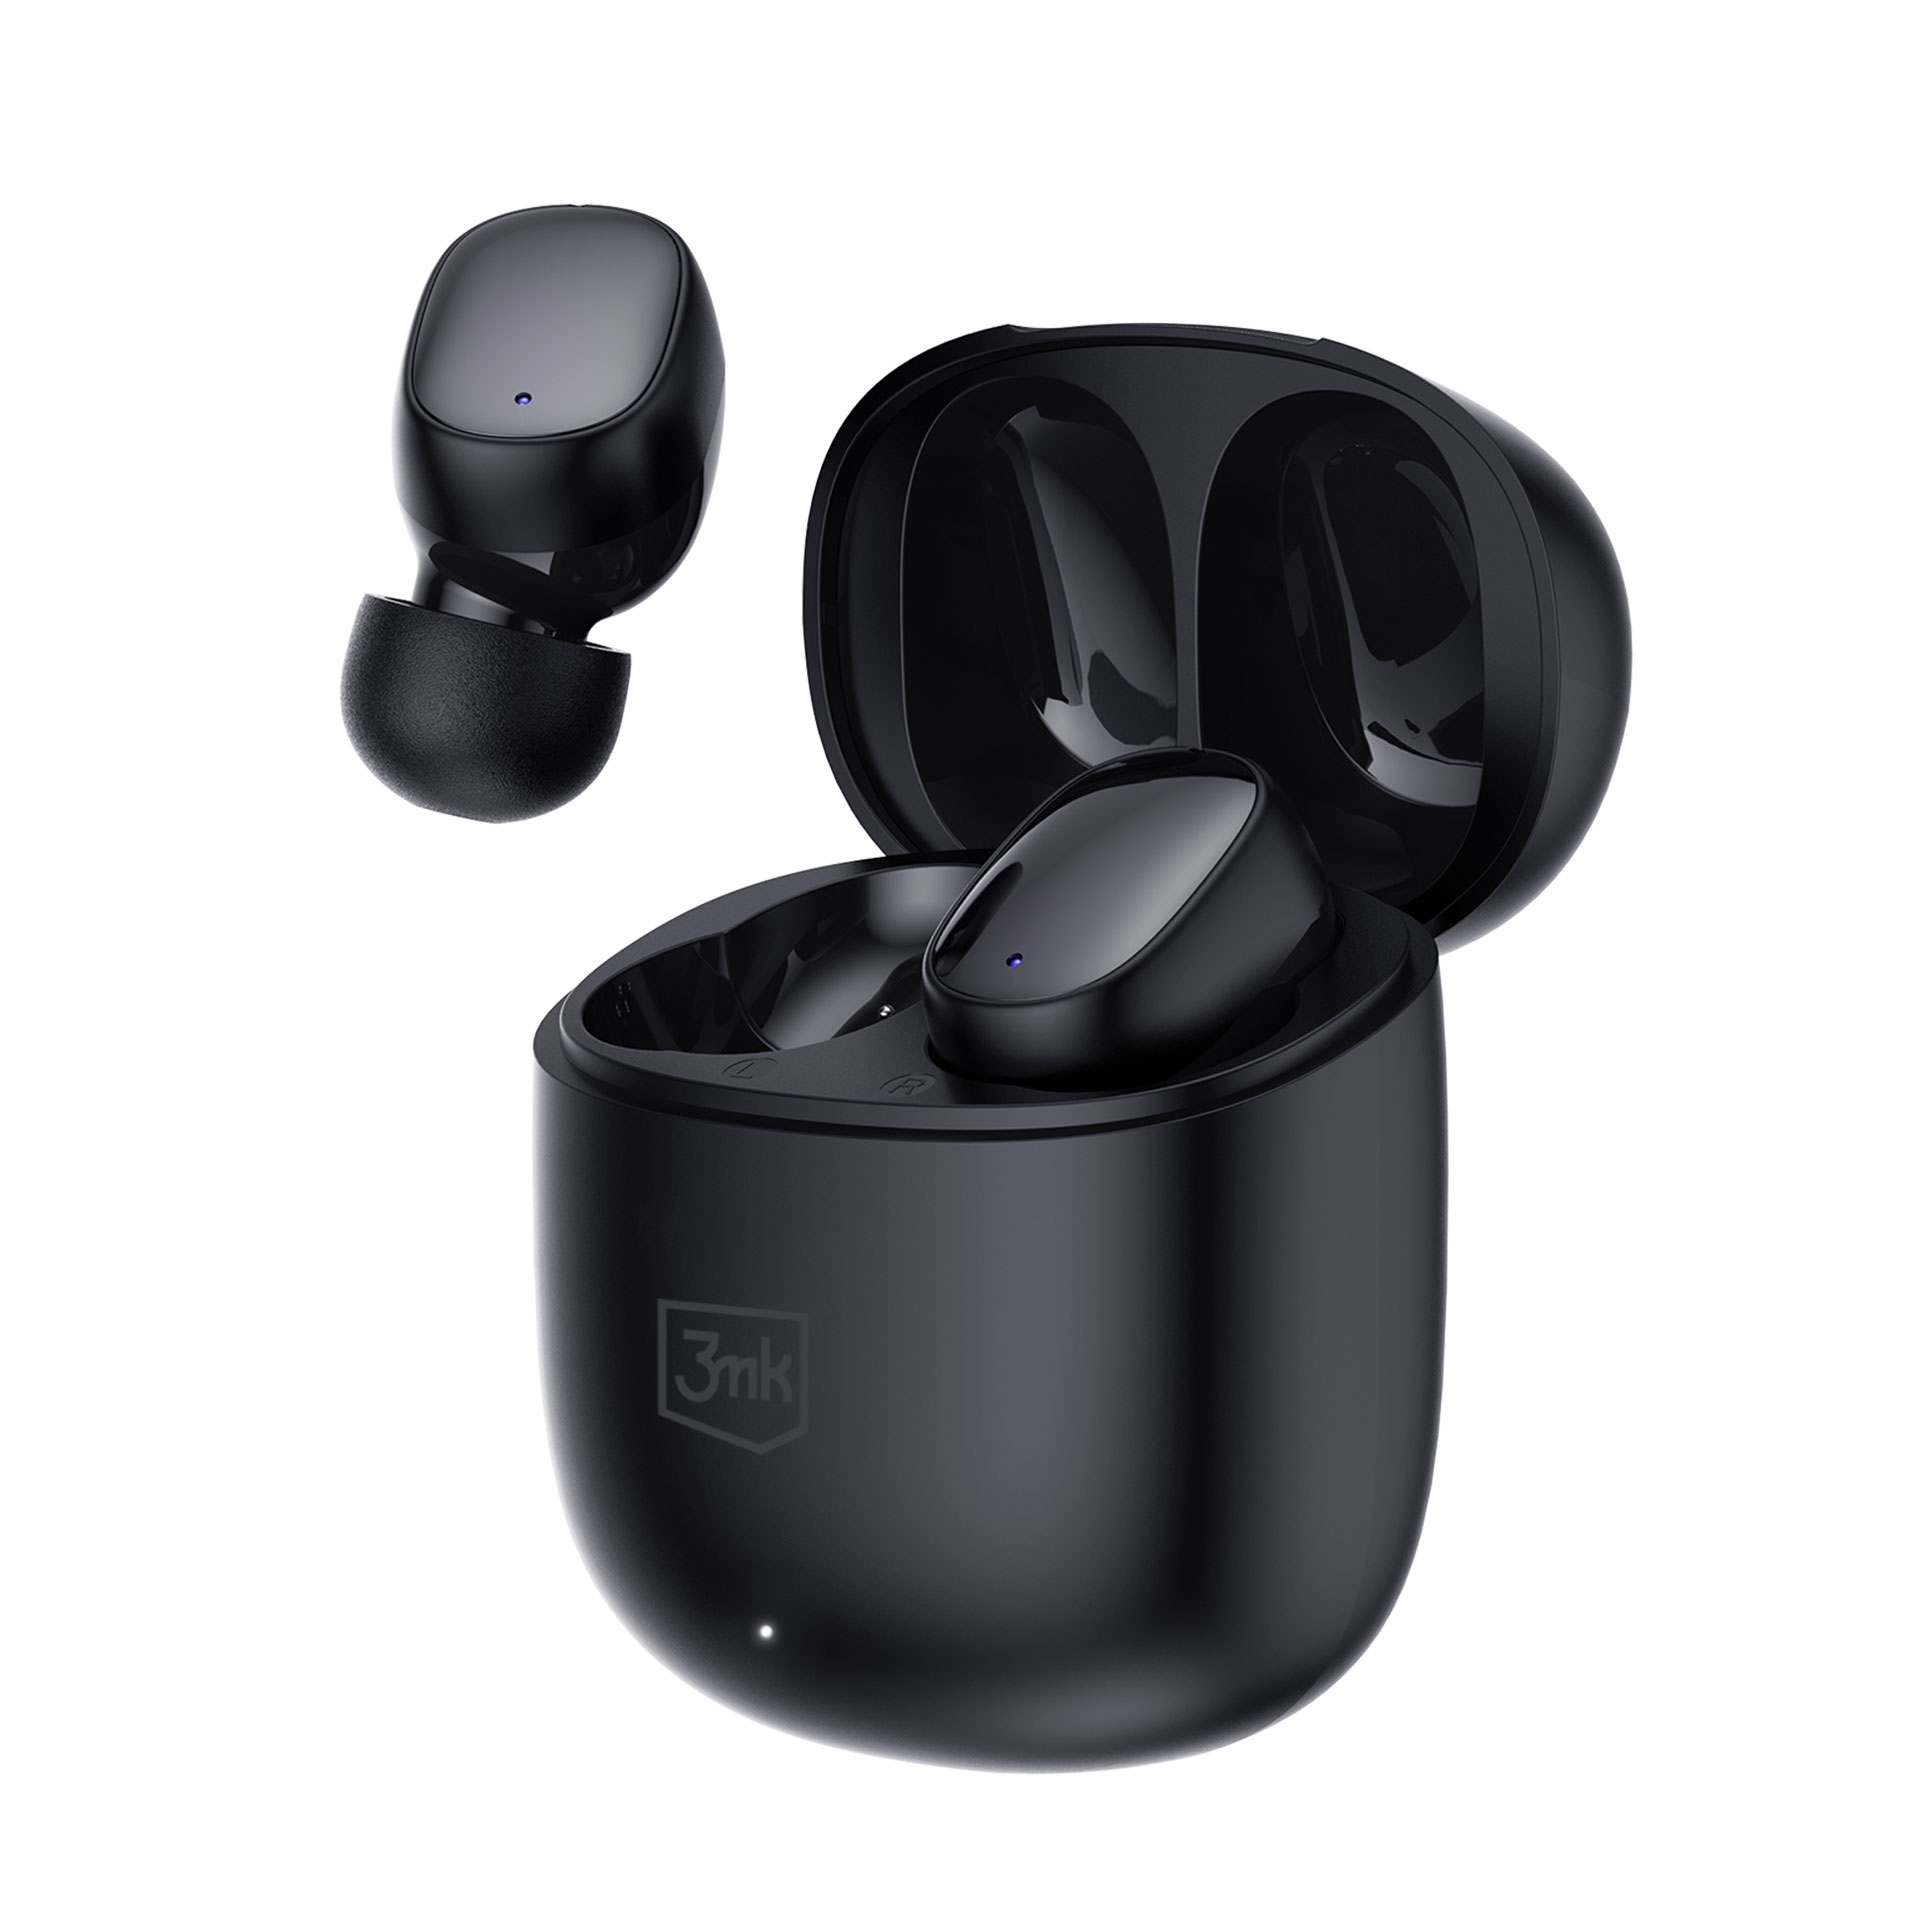 - 3MK In-ear FlowBuds 3mk Schwarz Black, Accessories Kopfhörer